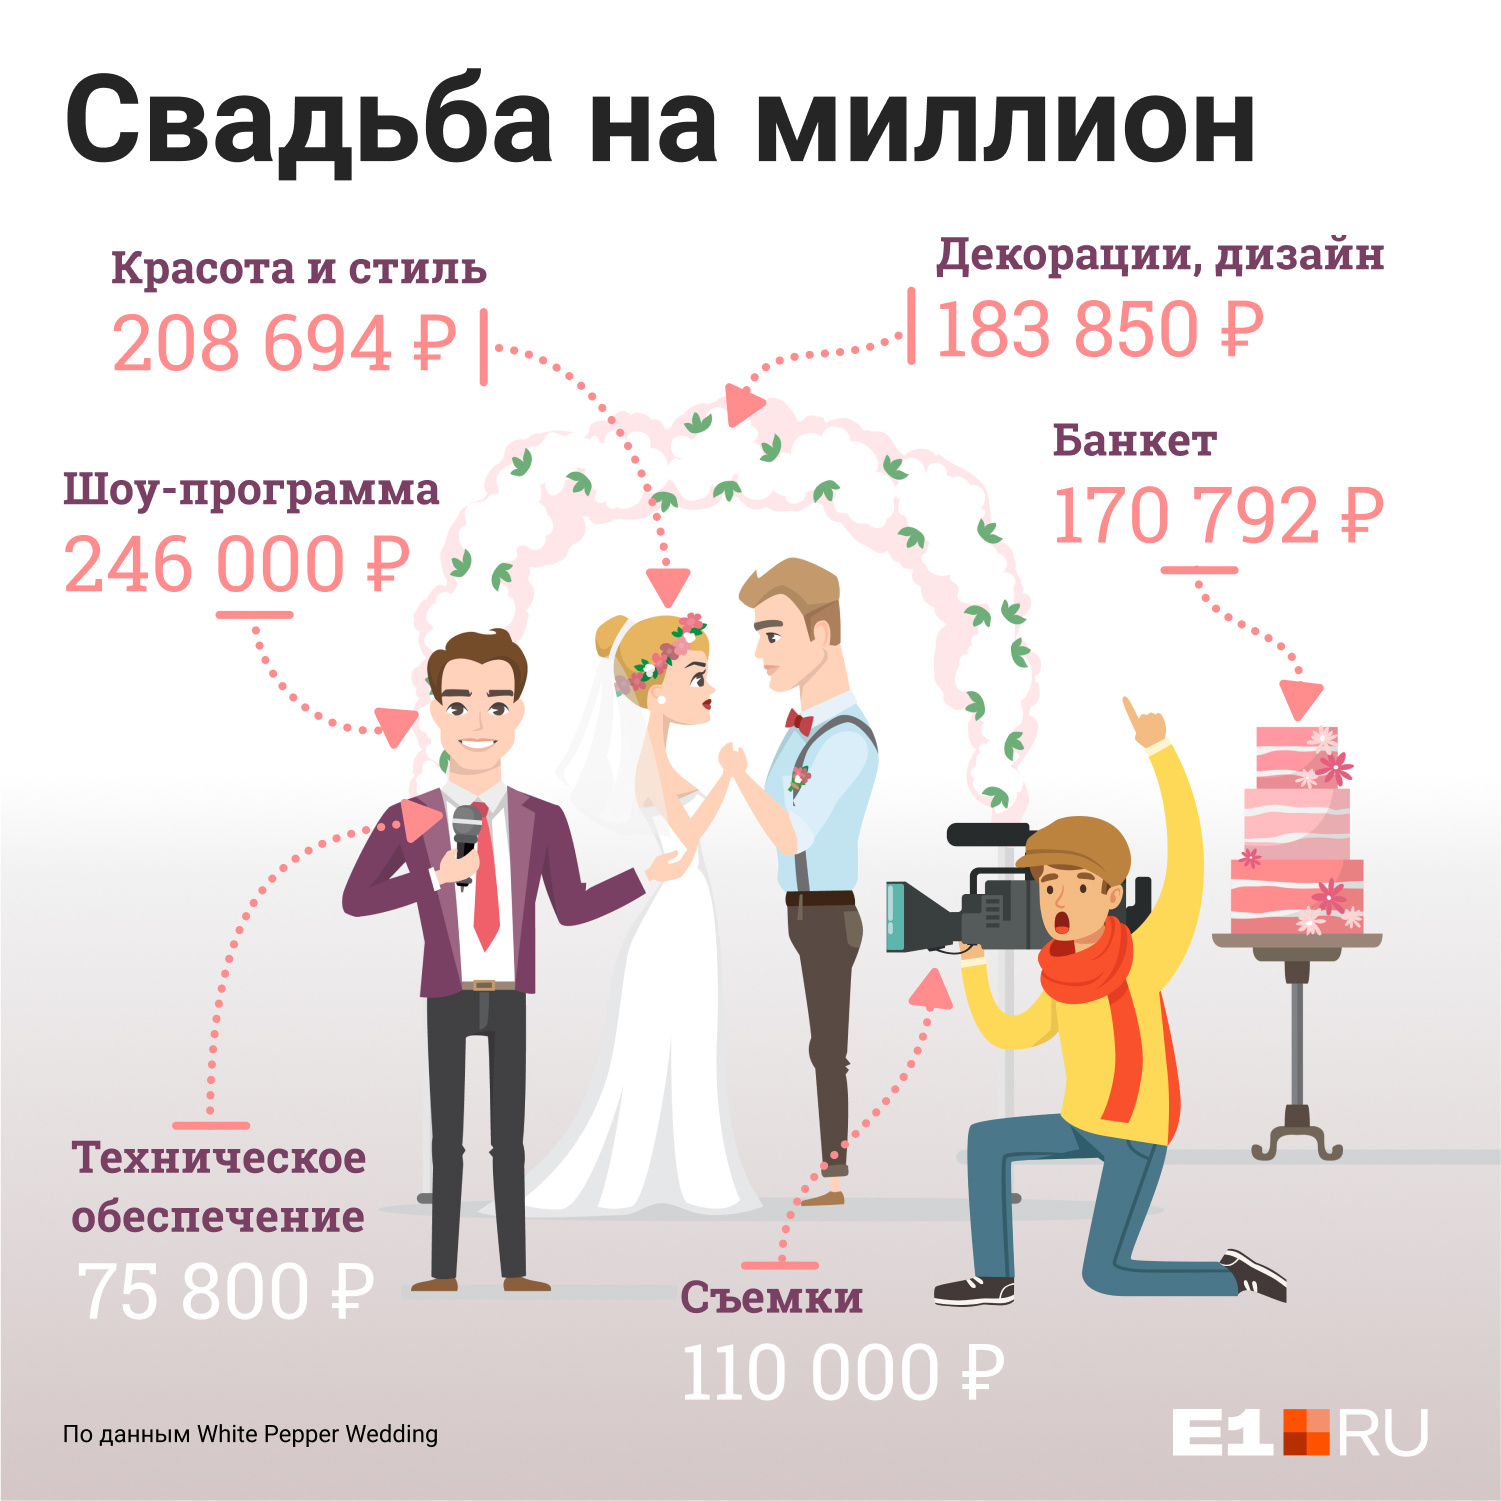 Свадьба паре обошлась в <nobr class="_">1 073 780</nobr> рублей 20 копеек